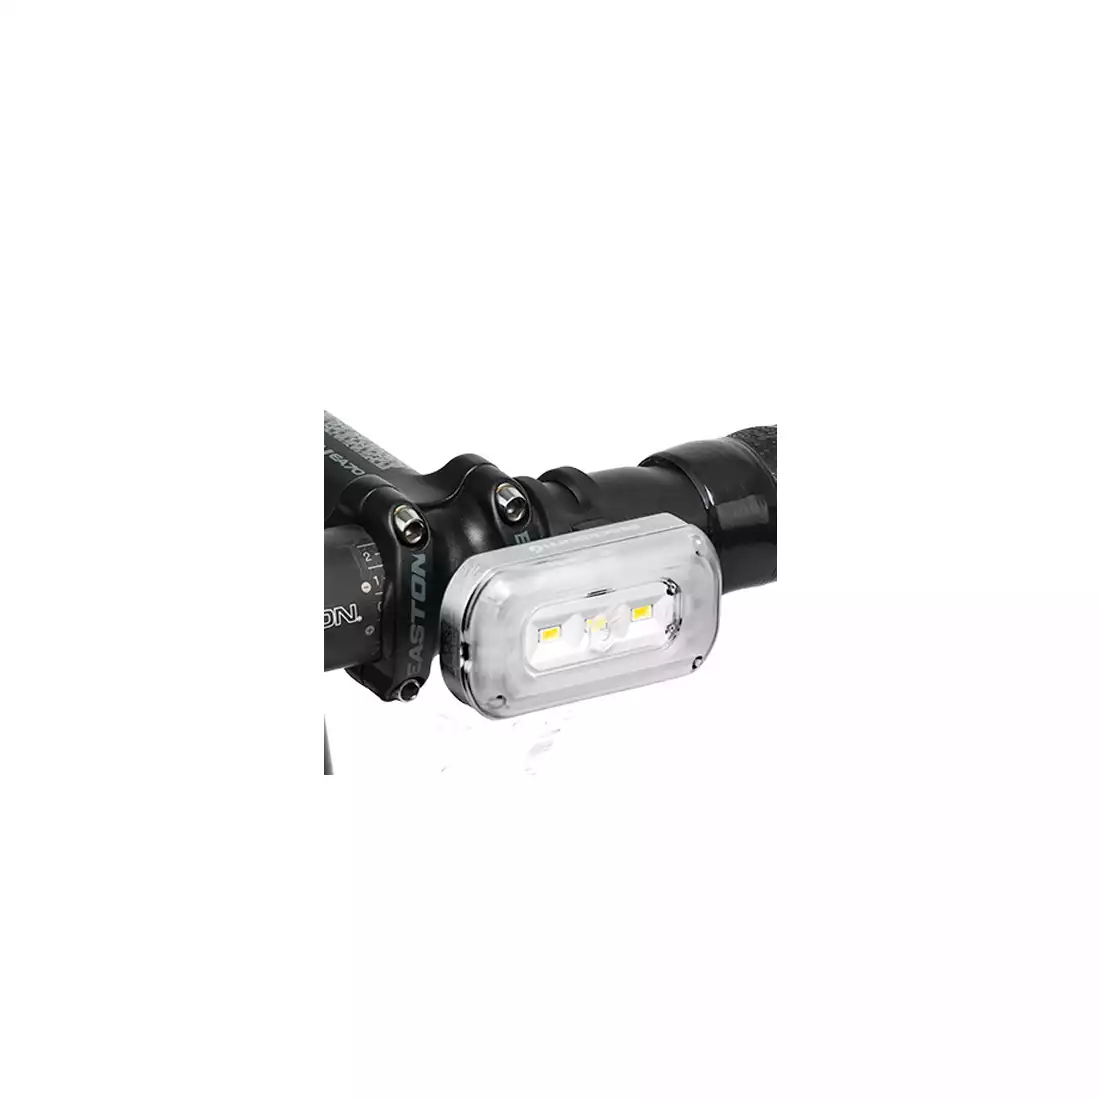 Lampka przednia BLACKBURN CENTRAL 100 USB, 100 lumenów BBN-7053783